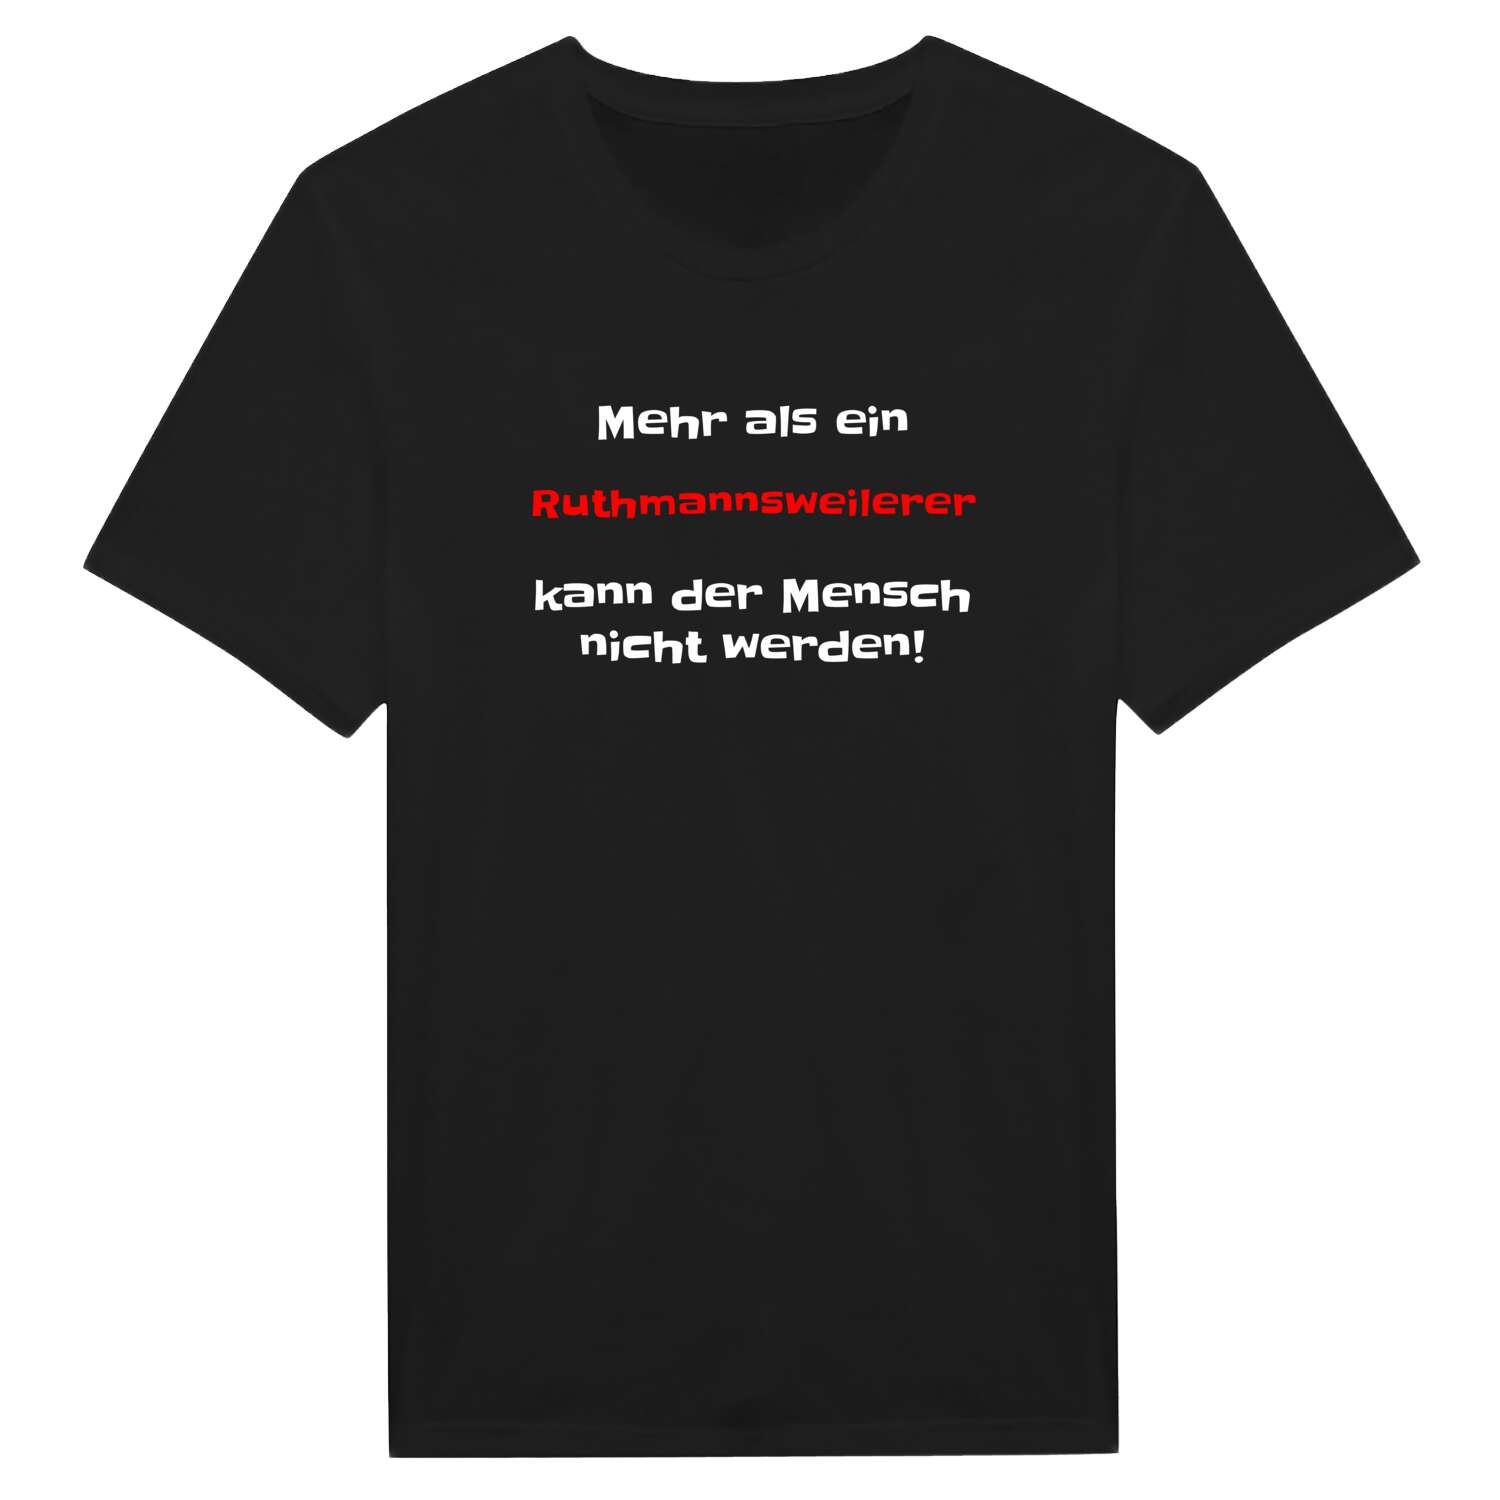 Ruthmannsweiler T-Shirt »Mehr als ein«